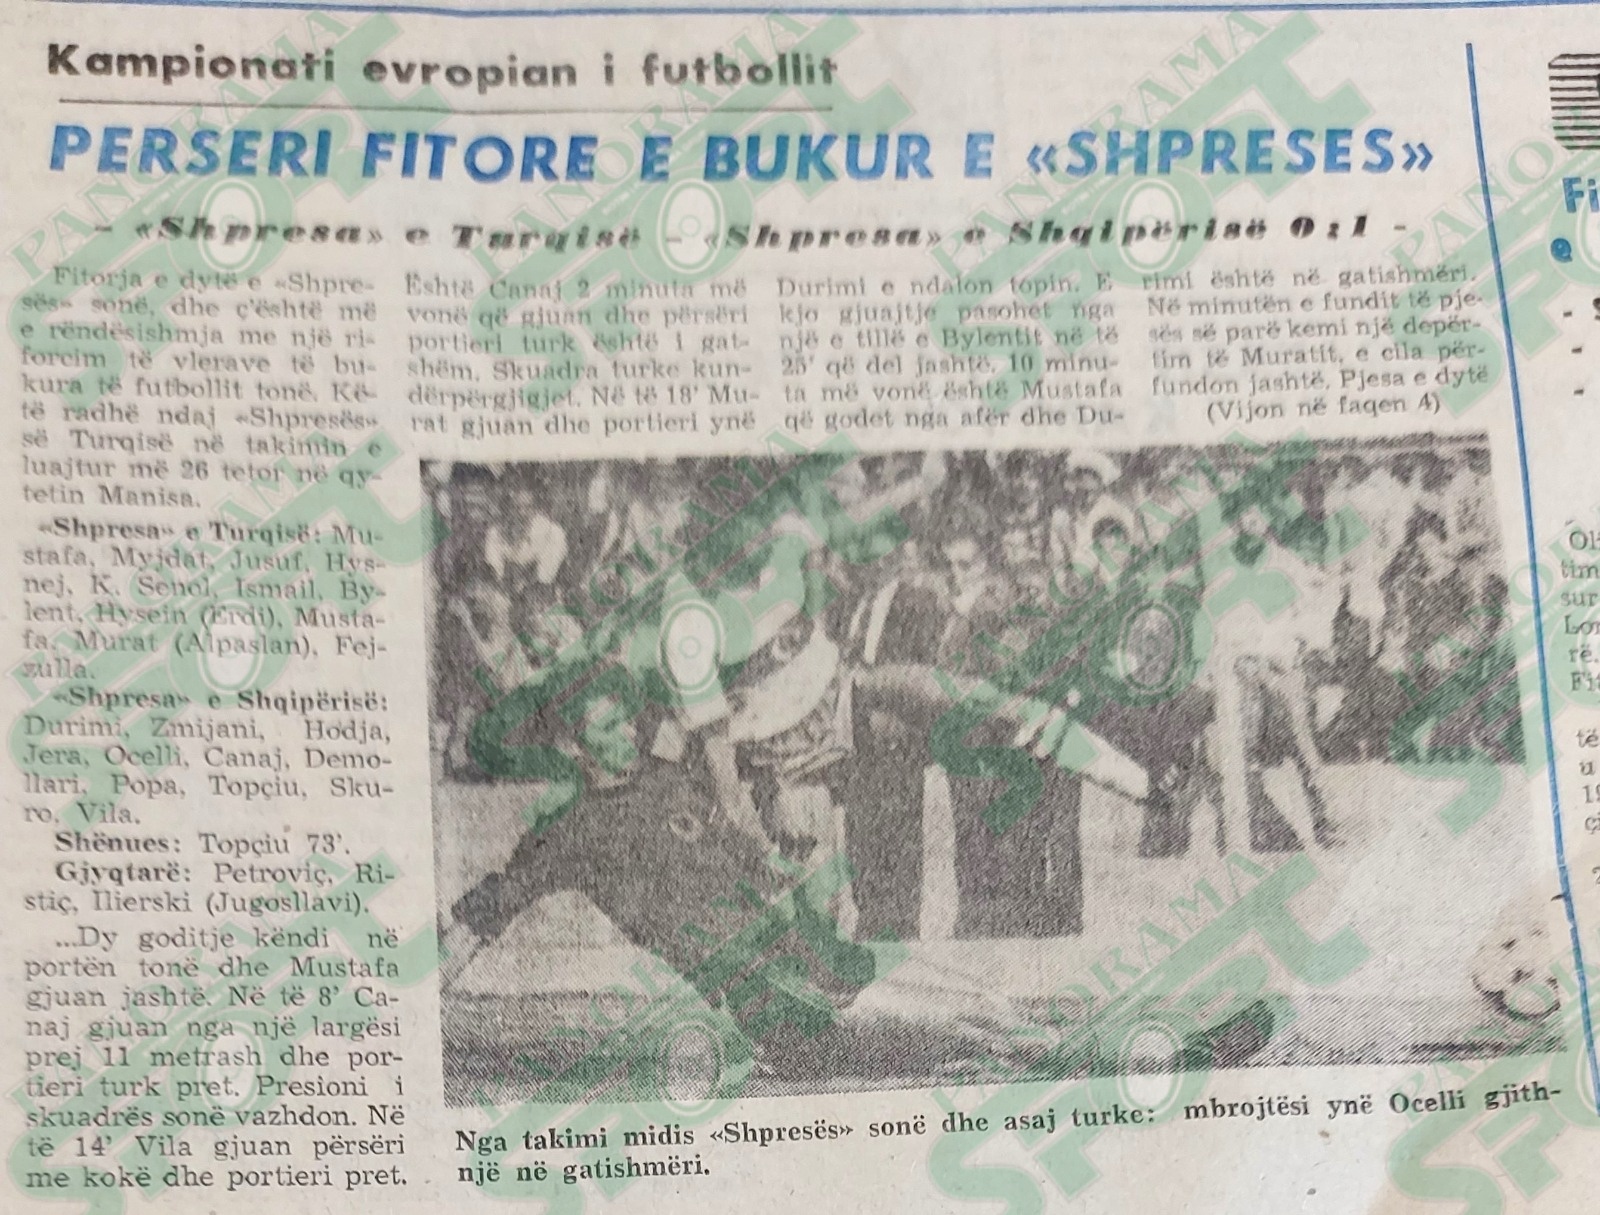 26 TETOR 1982. Turqia - Shqipëria 0-1 (“Shpresat”). Kreu i shkrimit të faqes së parë të “Sportit Popullor” për këtë ndeshje, me autor Prof. Skënder Begeja, shoqëruar edhe me këtë foto të vetme